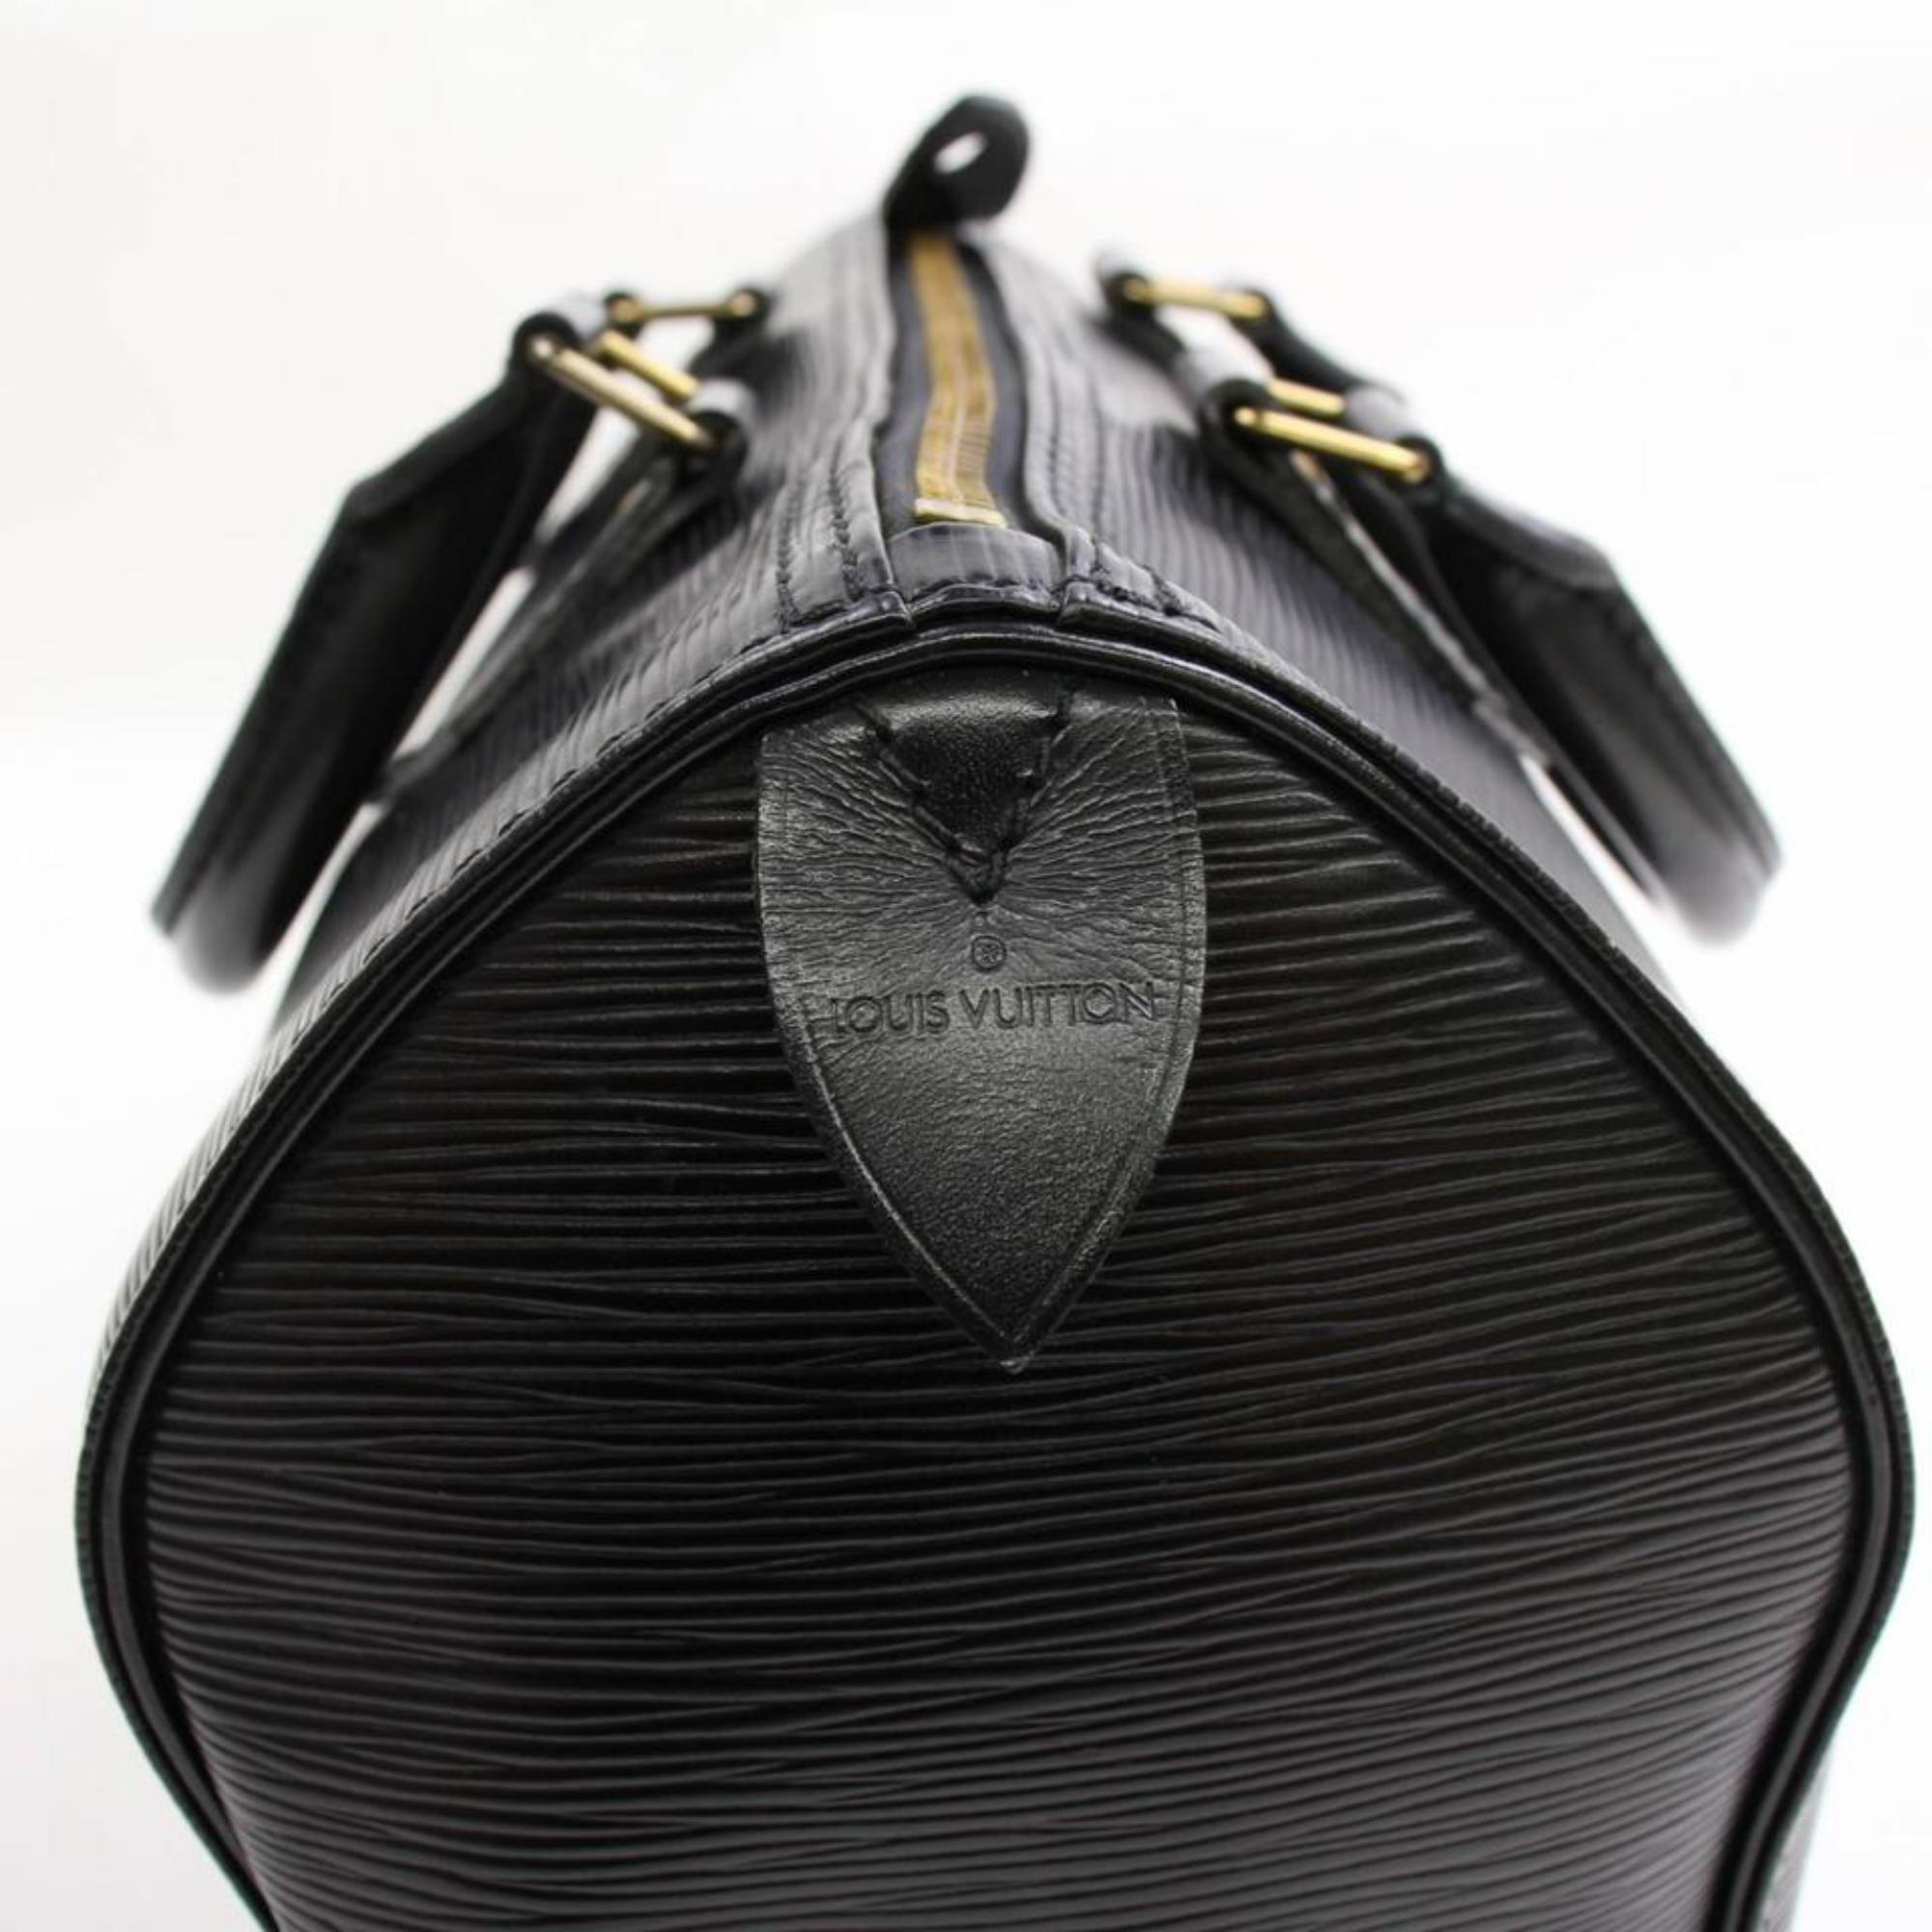 Louis Vuitton Speedy Noir 25 868360 Black Leather Satchel For Sale 7